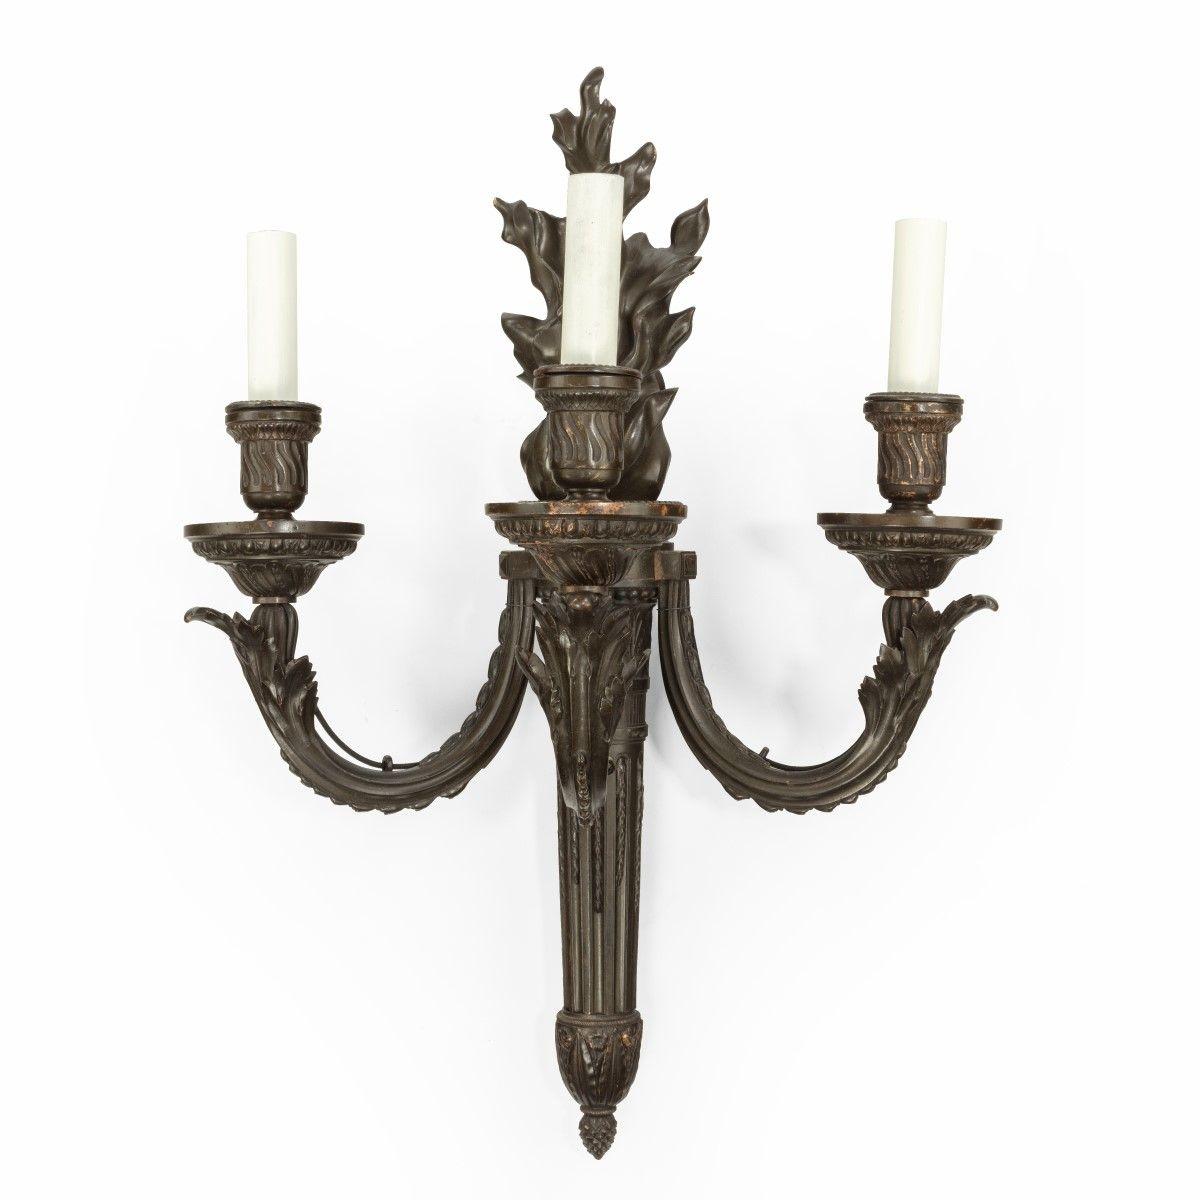 Ein Paar französischer Bronze-Wandleuchten in Form einer klassischen Fackel mit einer flambierten Spitze, die drei Arme trägt, verziert mit Riffelungen und klassischen Motiven, jetzt mit elektrischem Anschluss. Um 1880.